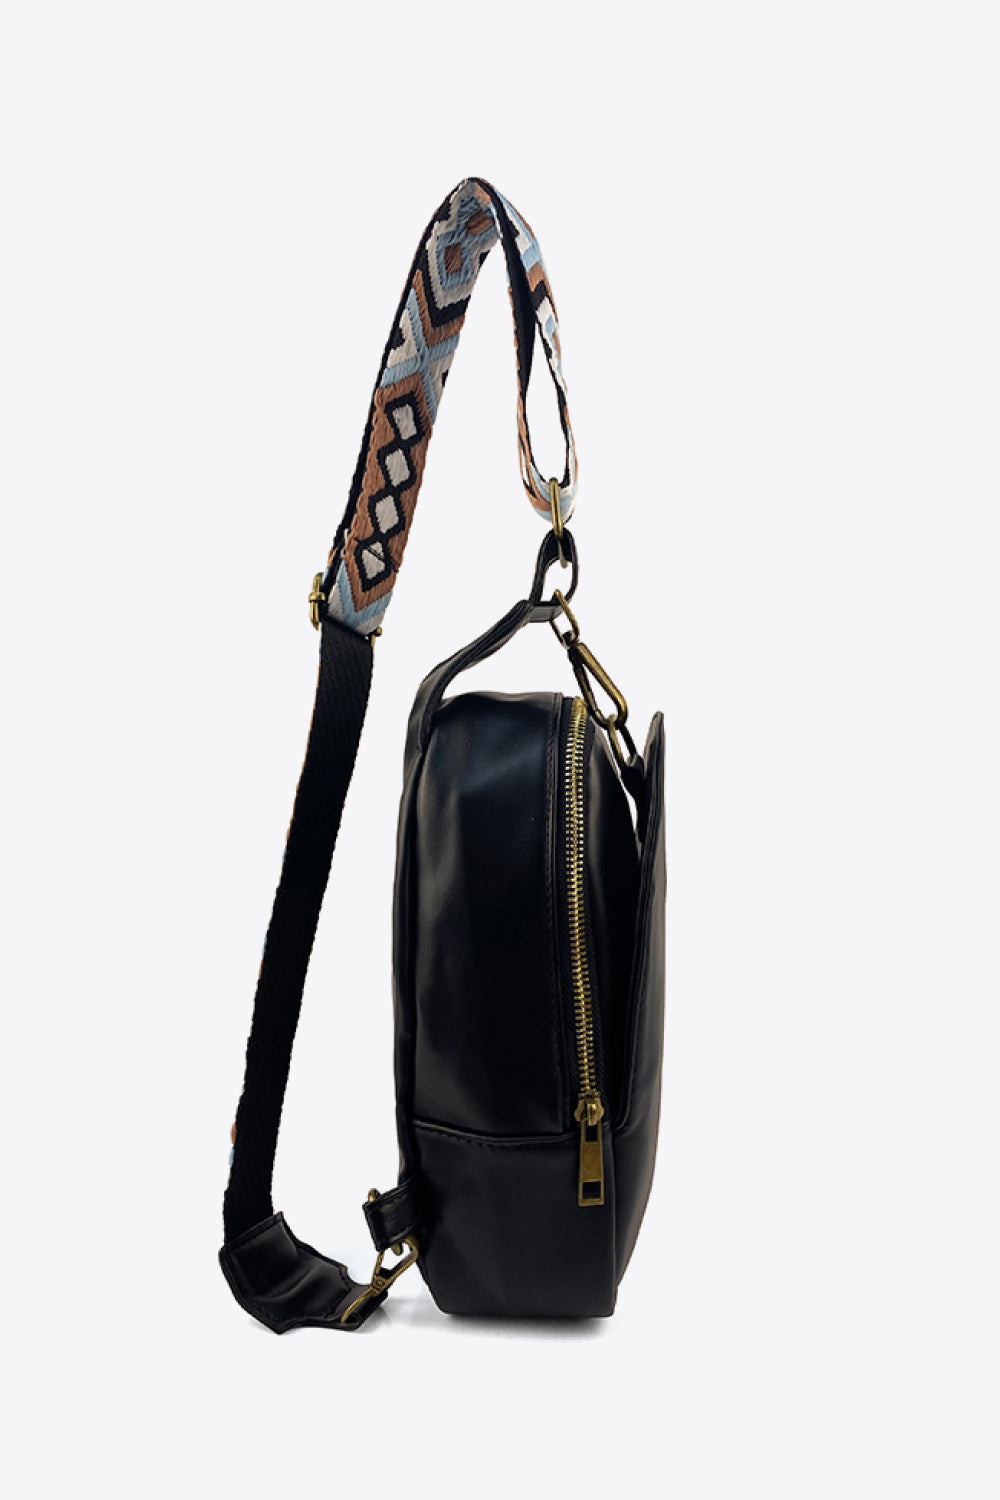 Adjustable Strap PU Leather Sling Bag - nailedmoms